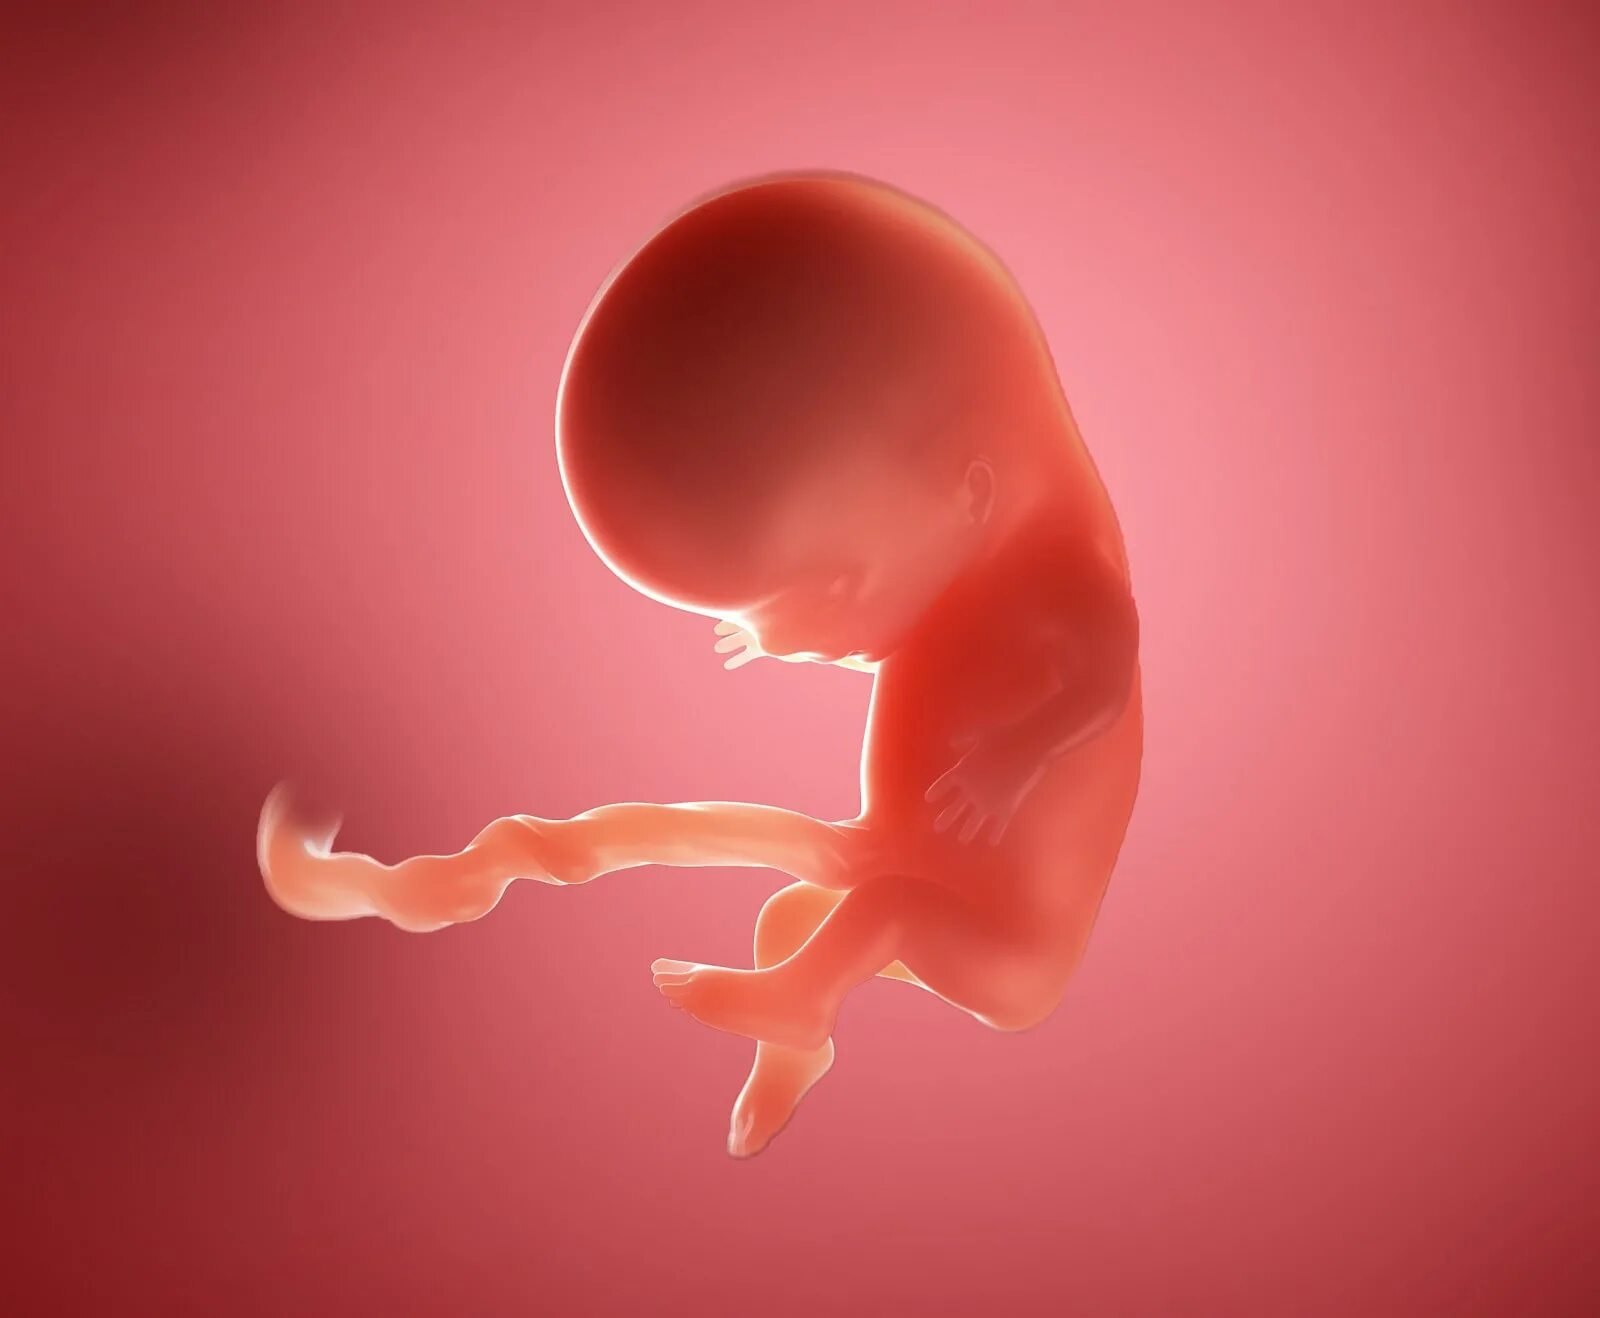 Зародыш 10 недель беременности. Плод человека 10 недель. Эмбрион на 10 неделе беременности. Симптомы 10 недели